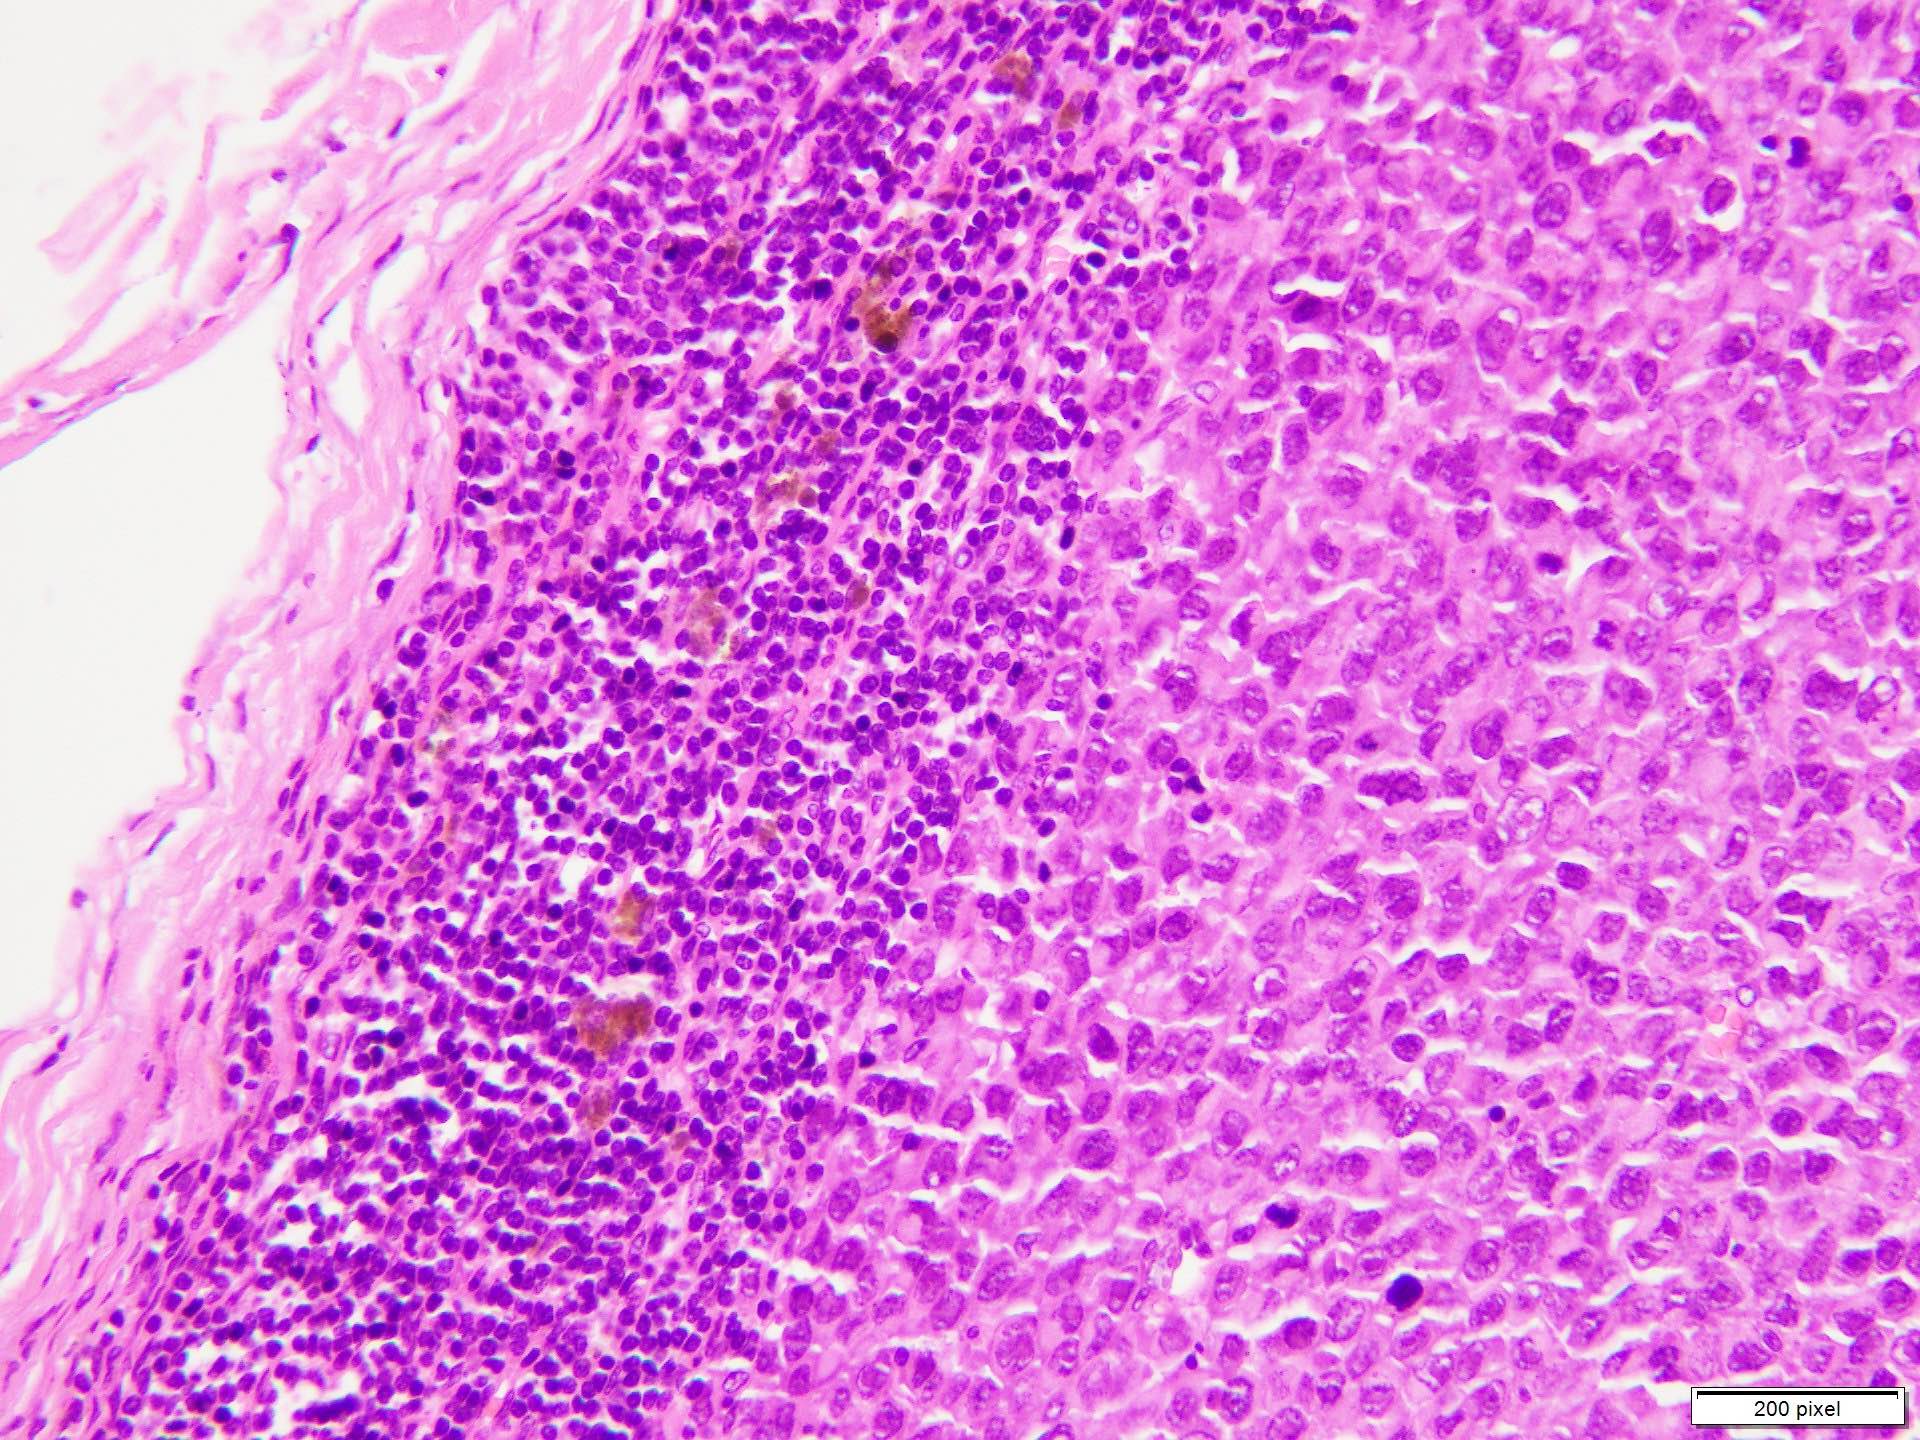 Melanoma metastasis to lymph node